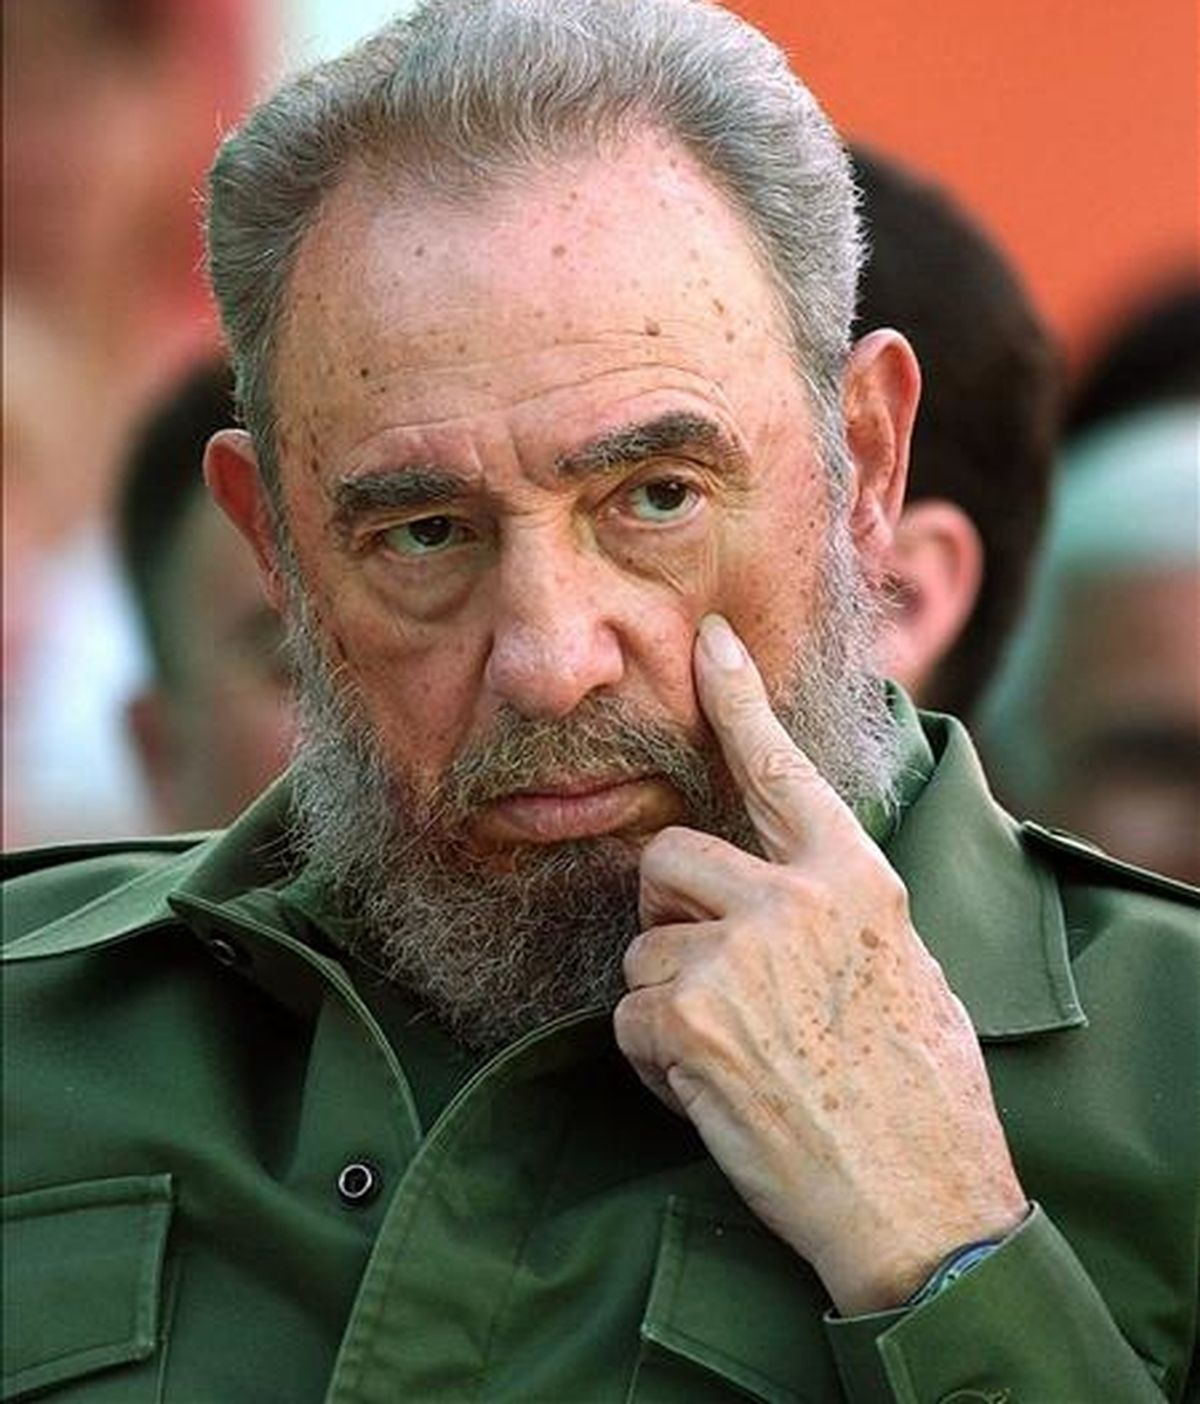 Castro reitera su queja de varios artículos de los últimos días de que el embargo comercial que aplica Estados Unidos a Cuba desde 1962 "ni siquiera se mencionó" en la declaración final de la Cumbre de las Américas celebrada el pasado fin de semana en Trinidad y Tobago. EFE/Archivo